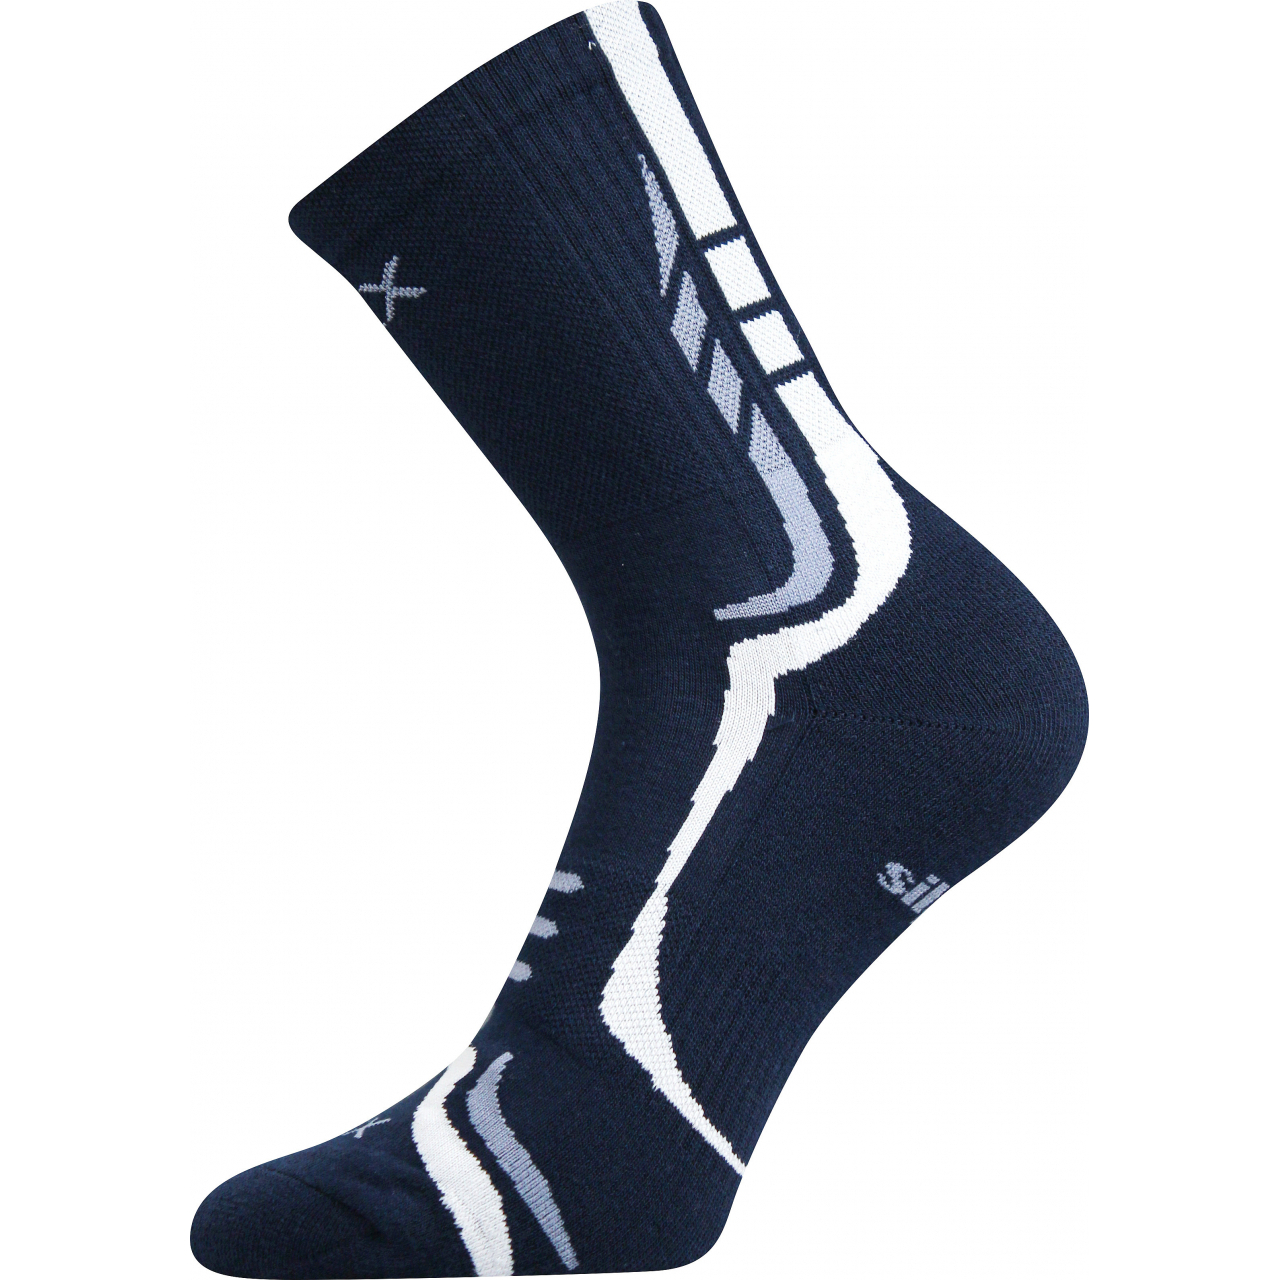 Ponožky unisex sportovní Voxx Thorx - navy-bílé, 39-42